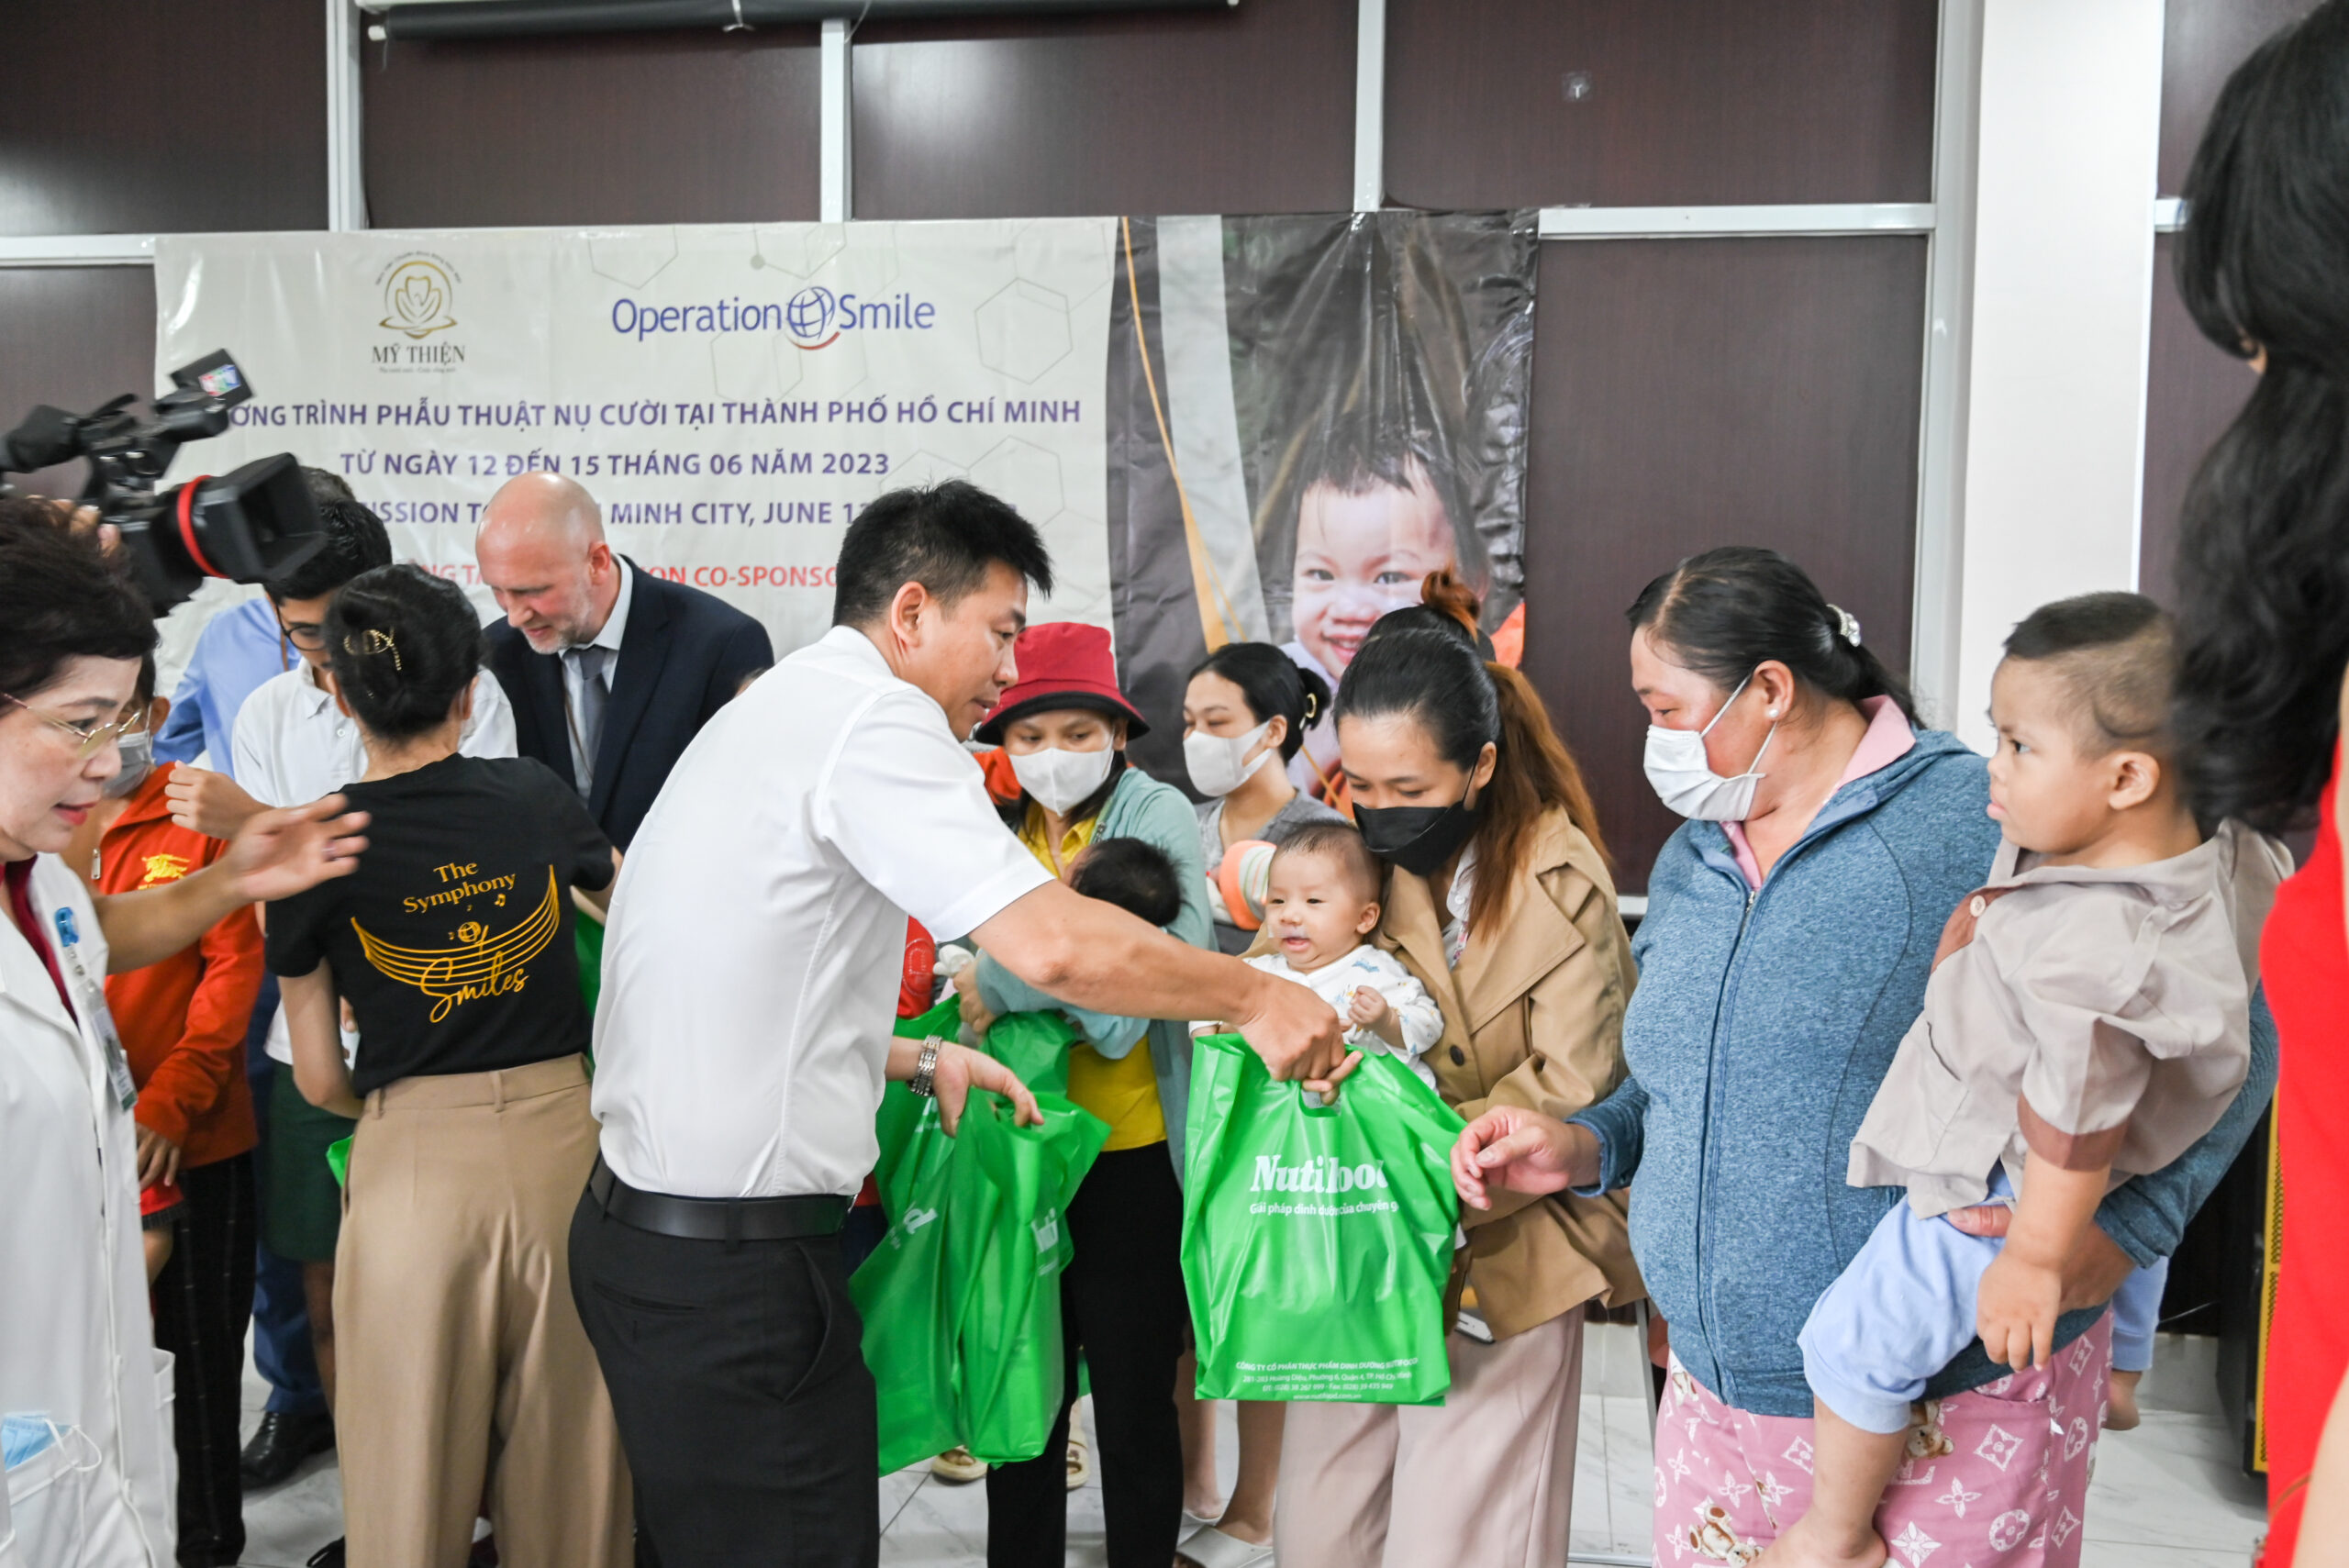 Đại diện nhãn hàng PregEU cùng Operation Smile và Bệnh viện Chuyên khoa Răng Hàm Mặt Mỹ Thiện trao tặng quà cho các em nhỏ hở môi, hàm ếch